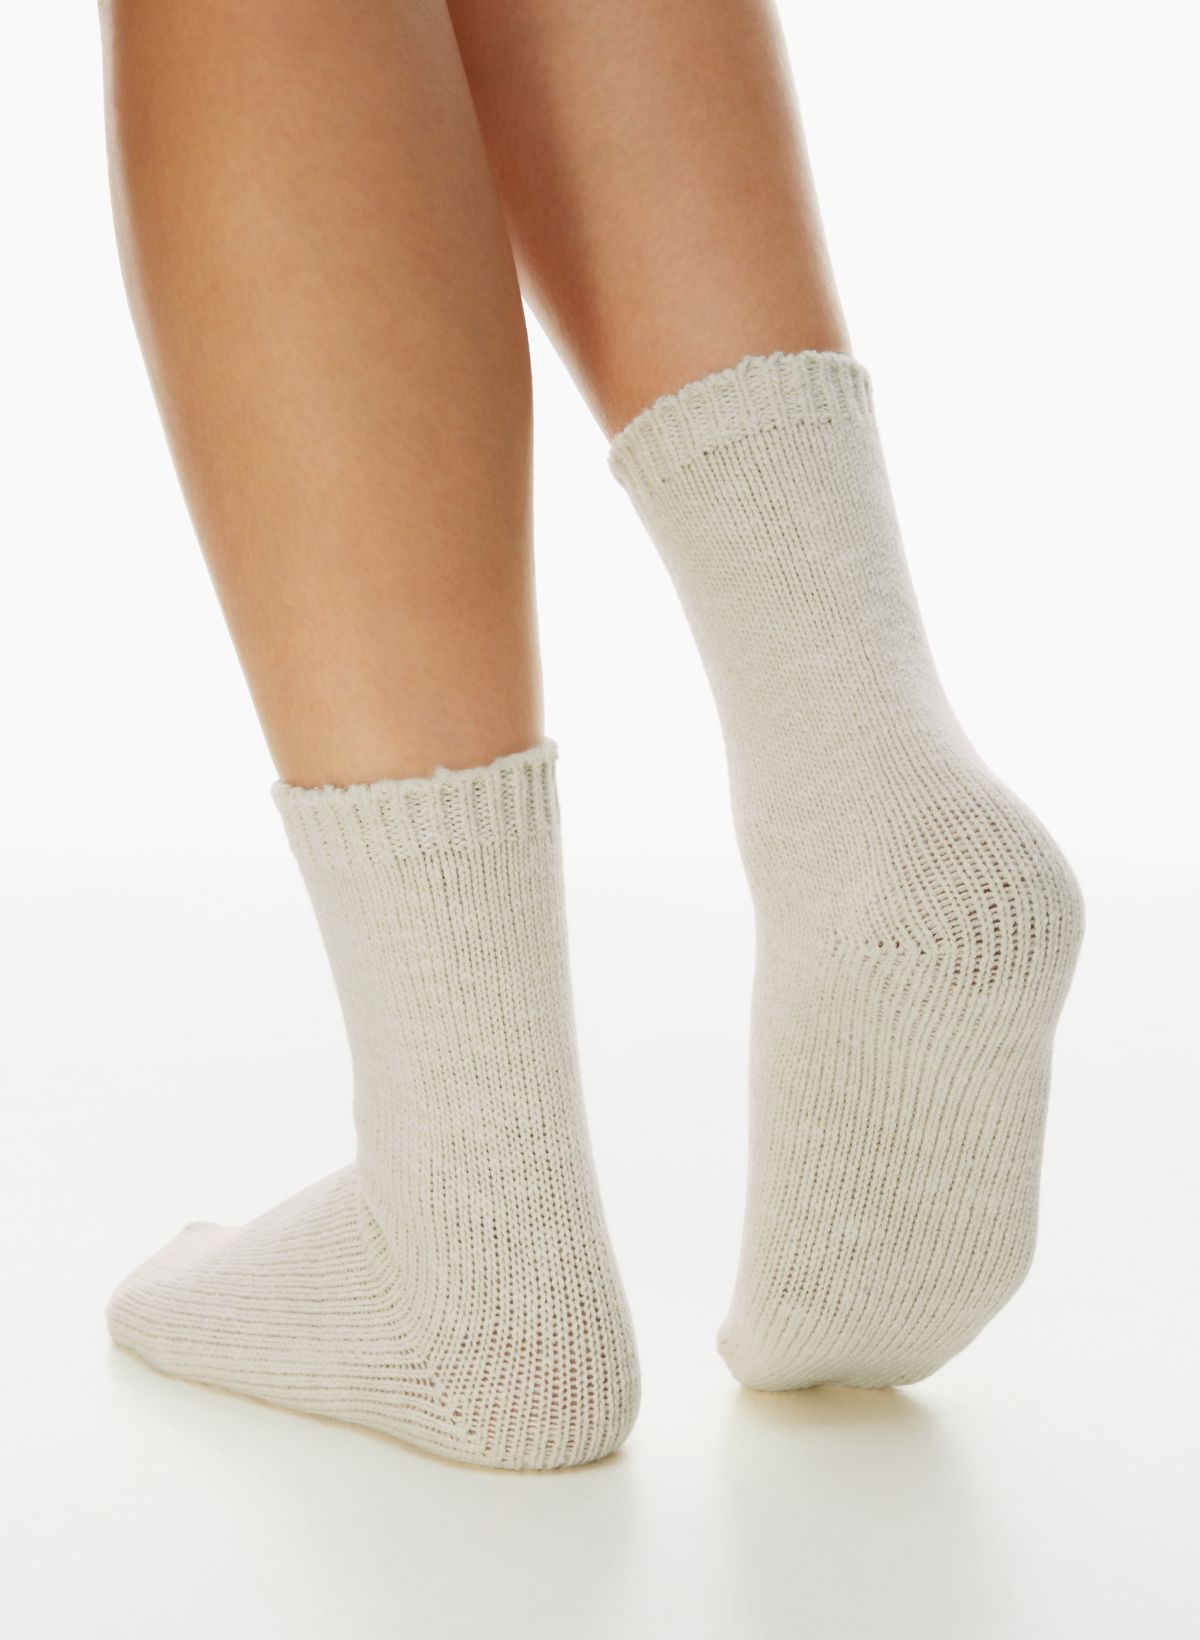 Personalized Fuzzy Socks -  Canada